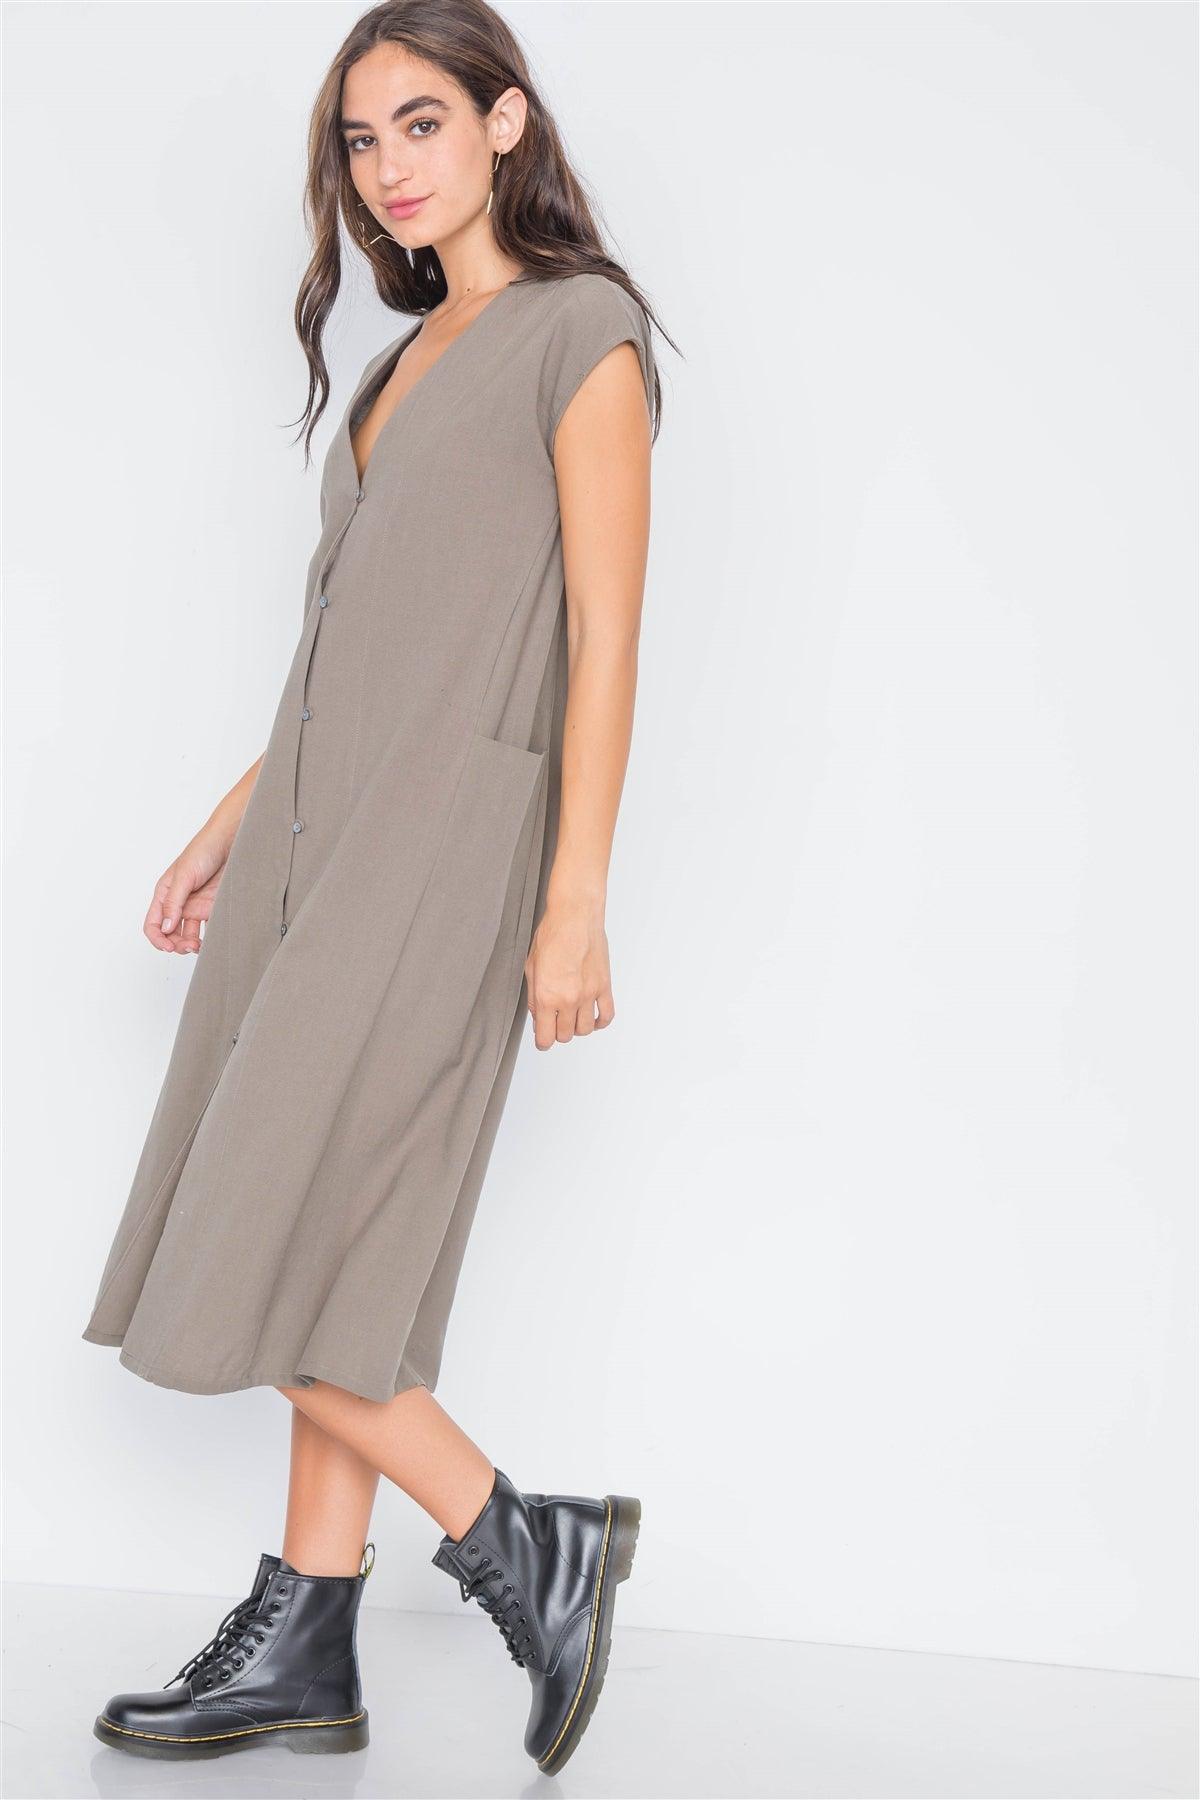 Field Grey Button Down Sleeveless Dress /3-2-1